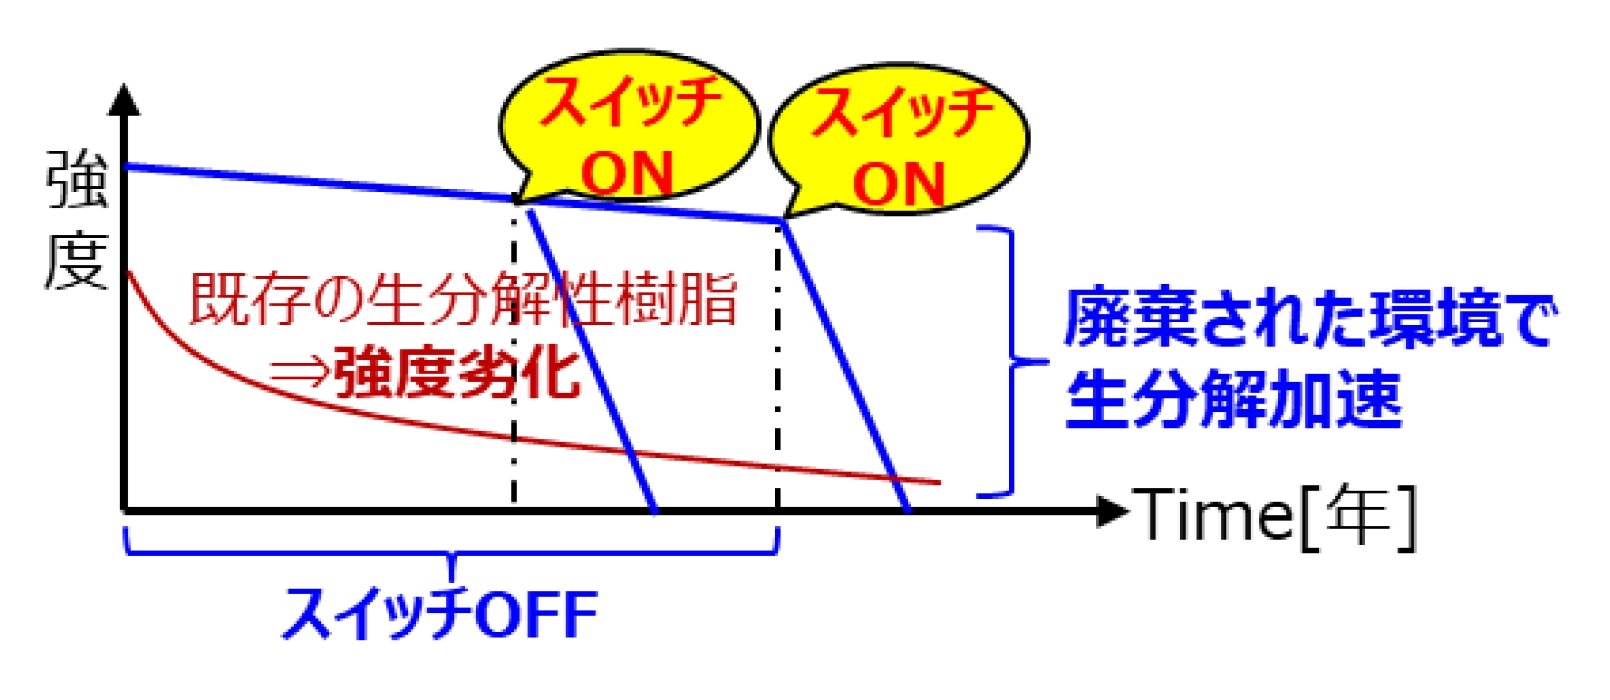 生分解スイッチがONになると生分解が加速することを表した図